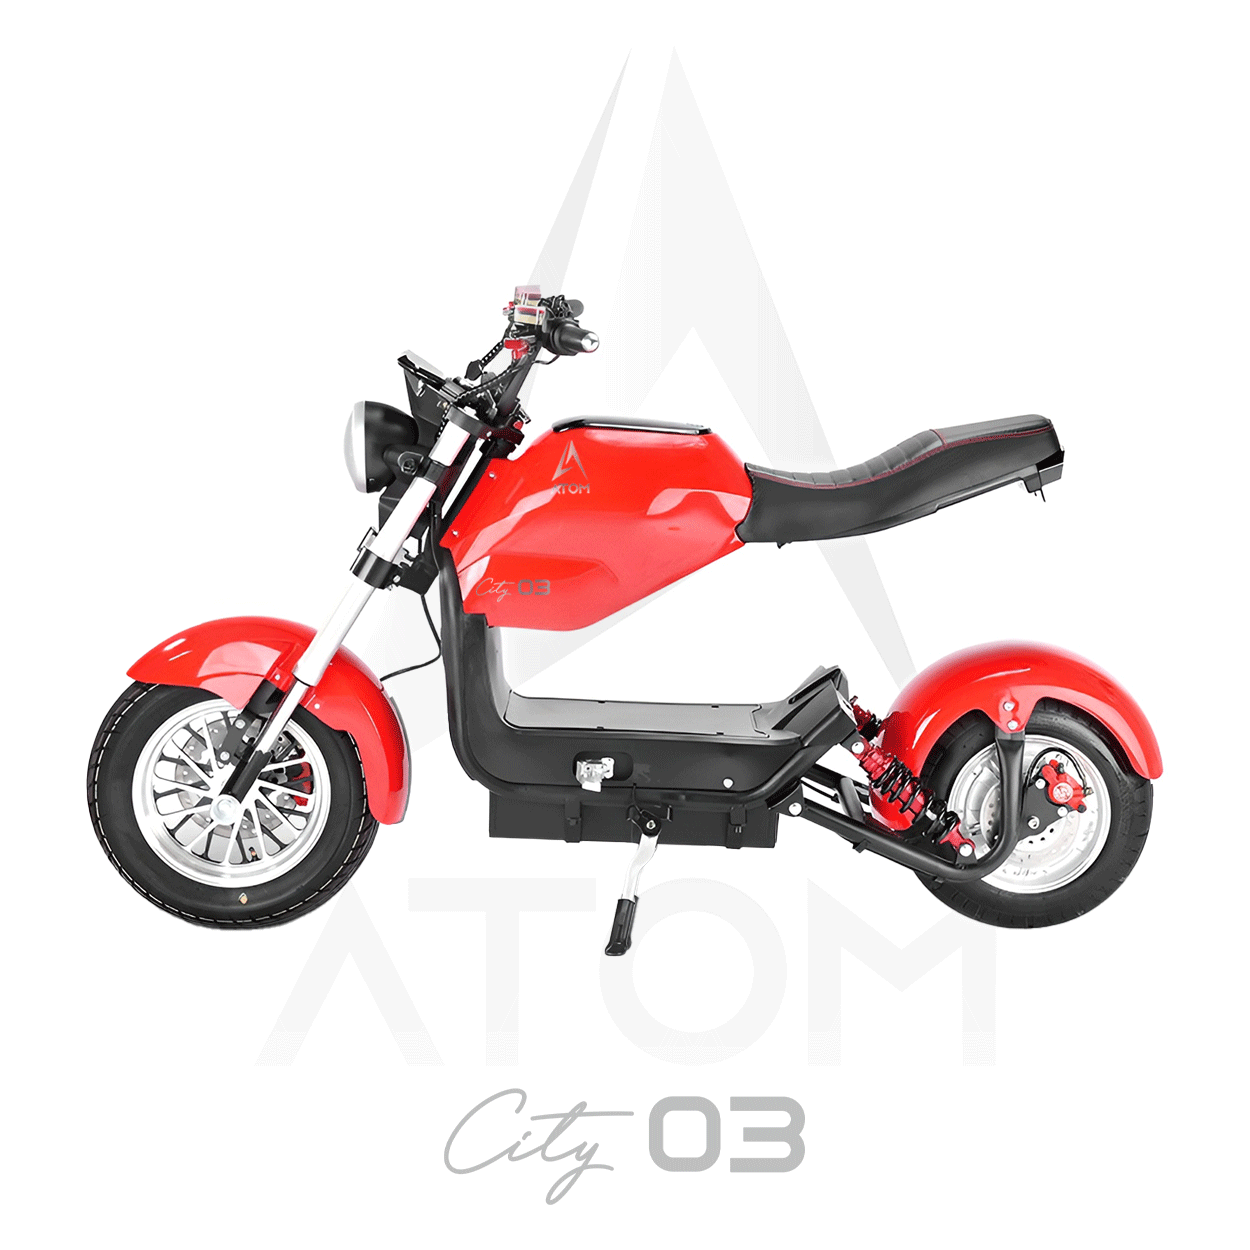 Scooter électrique, Atom City 03 | 1500 W | 50 cc | V-max 45 km/h | Autonomie 60 km - Atom Motors